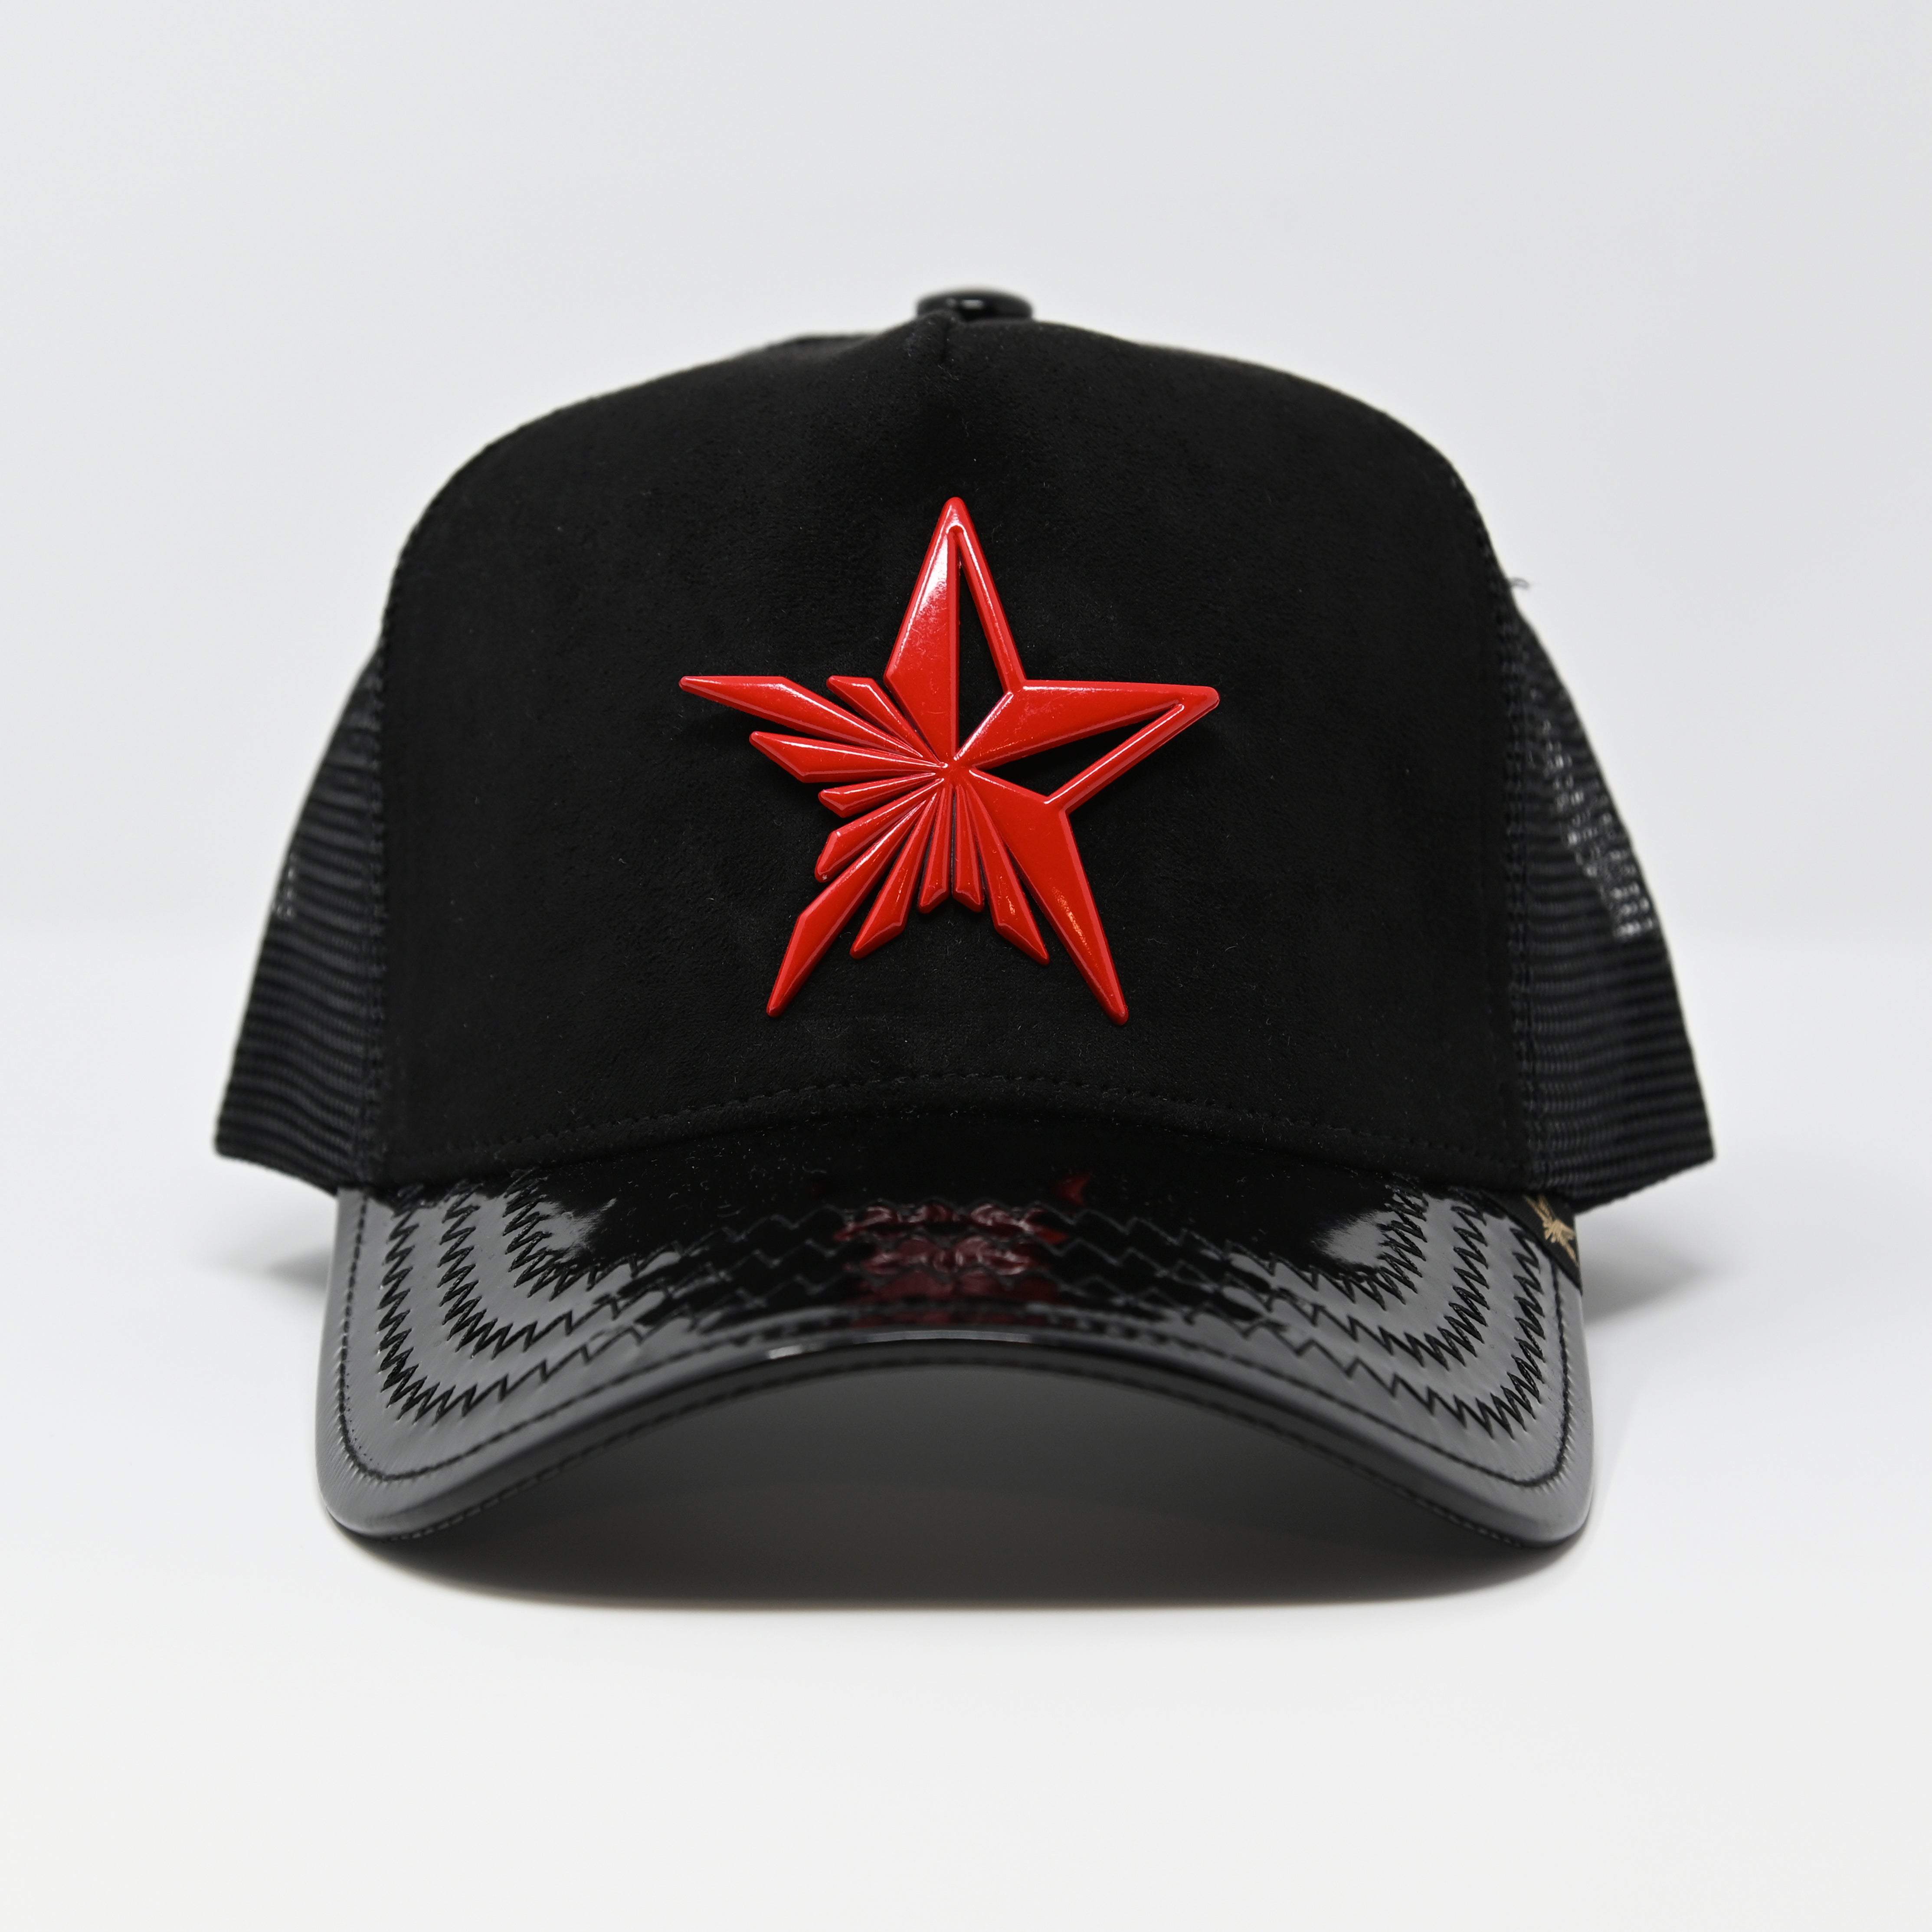 GOLD STAR - STAR RADIANCE TRUCKER HAT - BLACK/RED